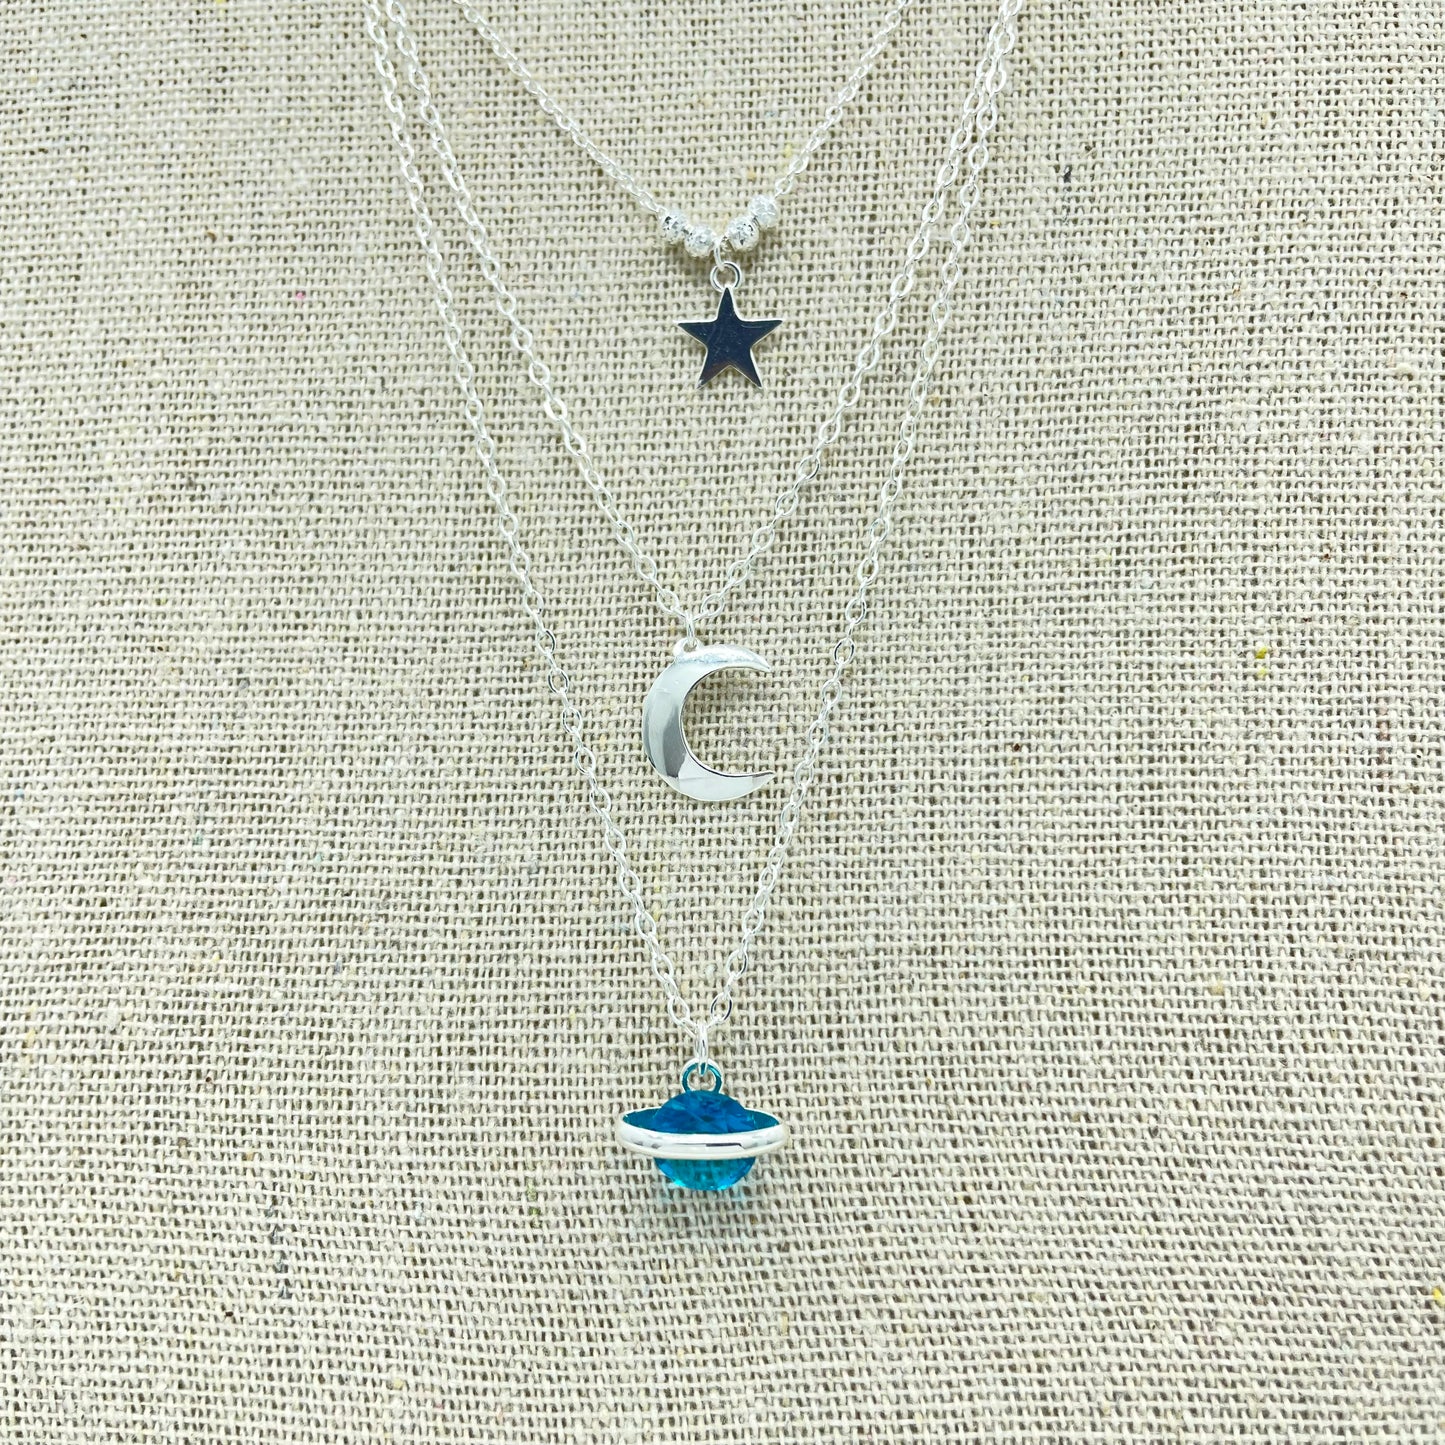 Trio Universo. Estrella, Luna, Planeta y Cadena de Plata.